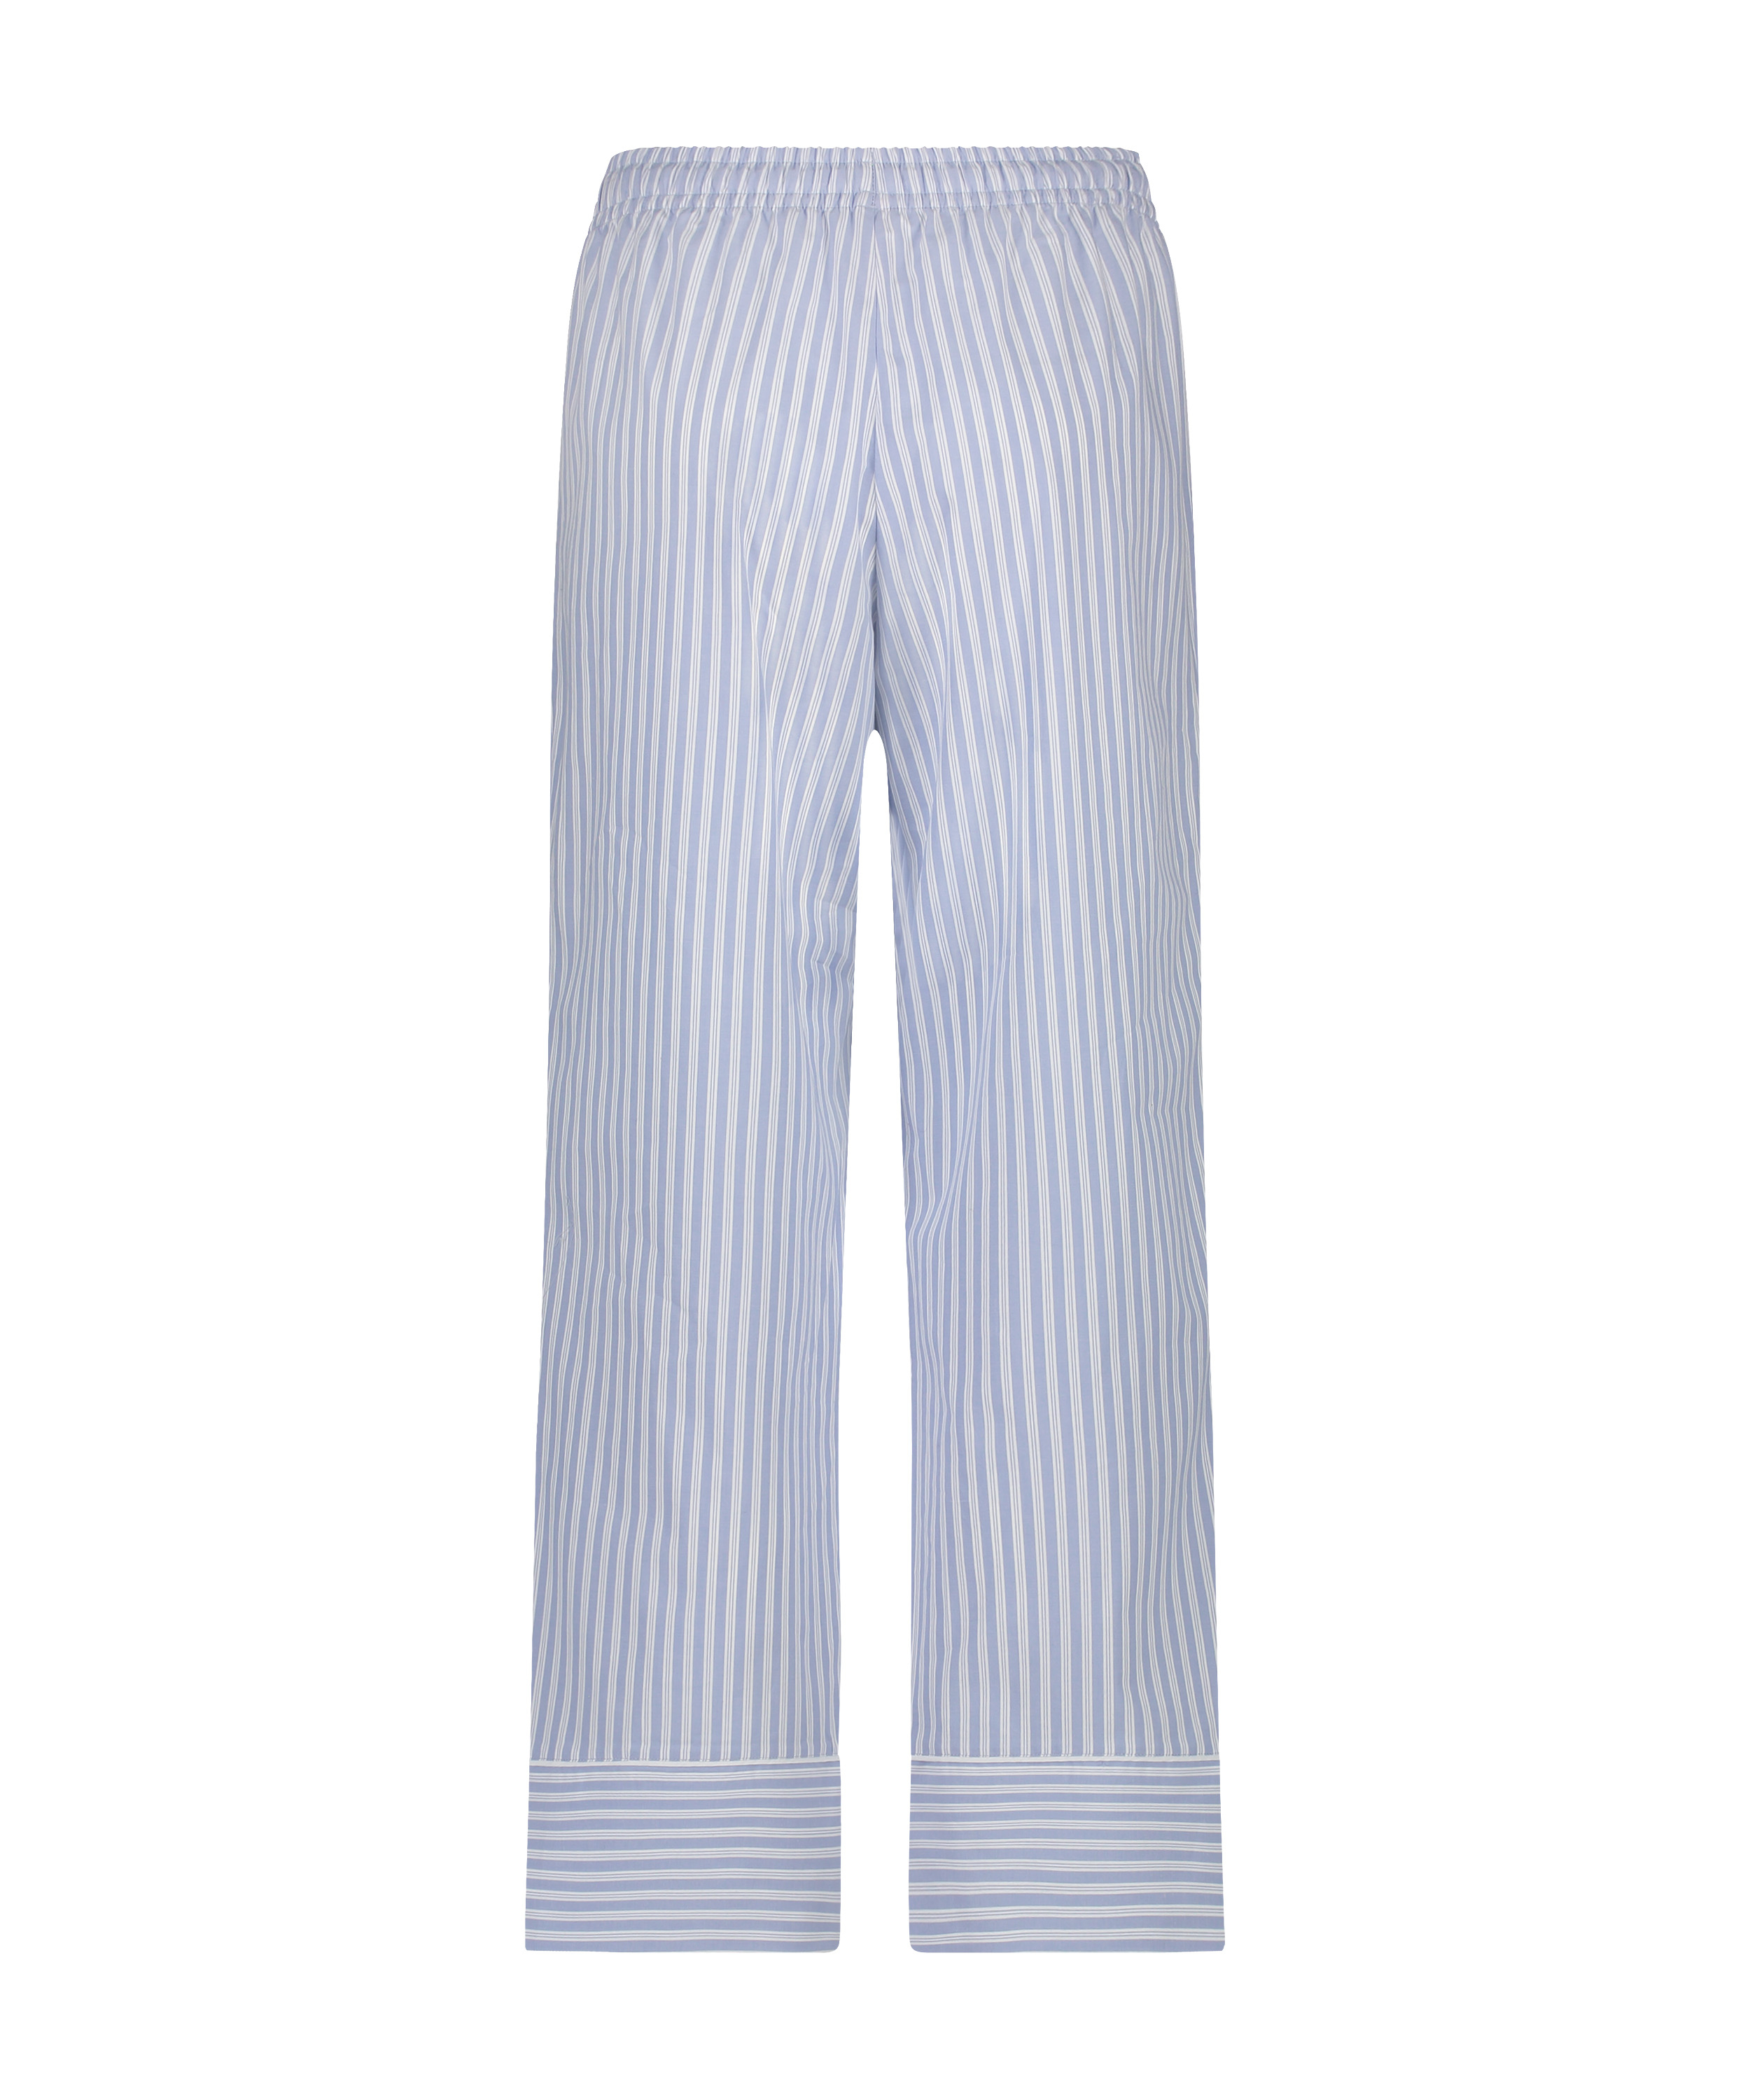 Pyjamasbukser Stripy, blå, main